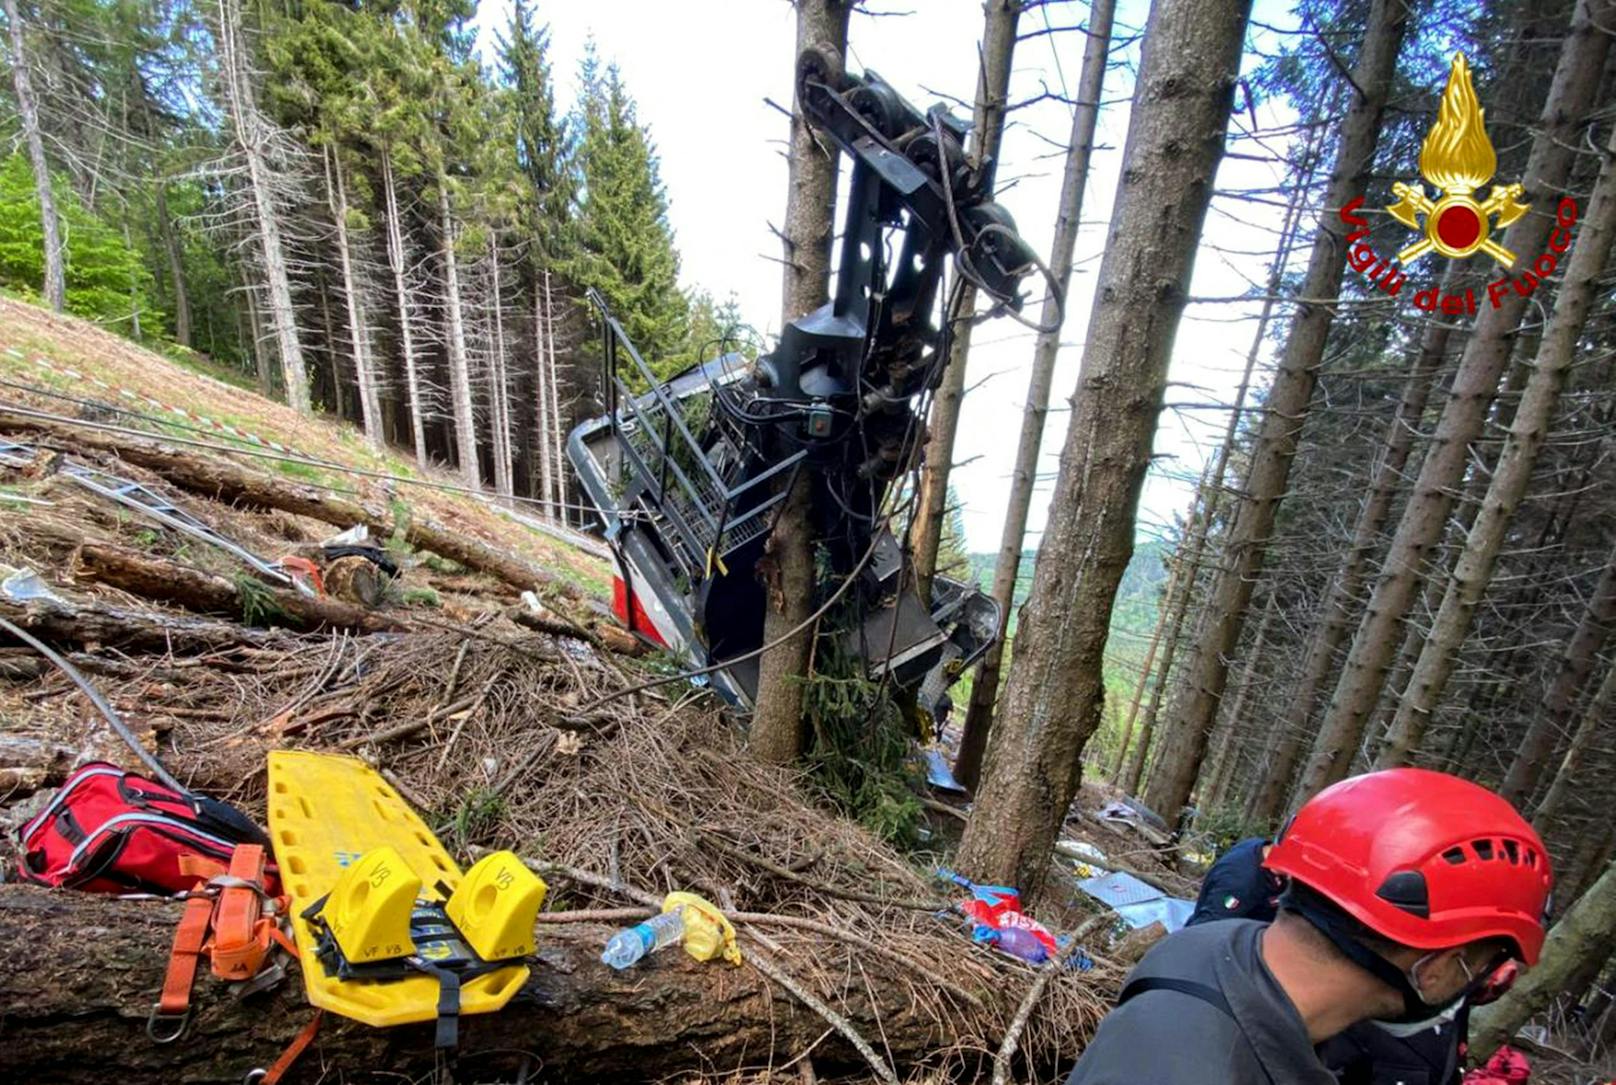 Beim Absturz einer Seilbahn-Kabine im italienischen Piemont sind am 23. Mai 2021 mindestens 13 Menschen ums Leben gekommen. Zwei Kinder konnten schwerst verletzt geborgen und in ein Spital geflogen werden.